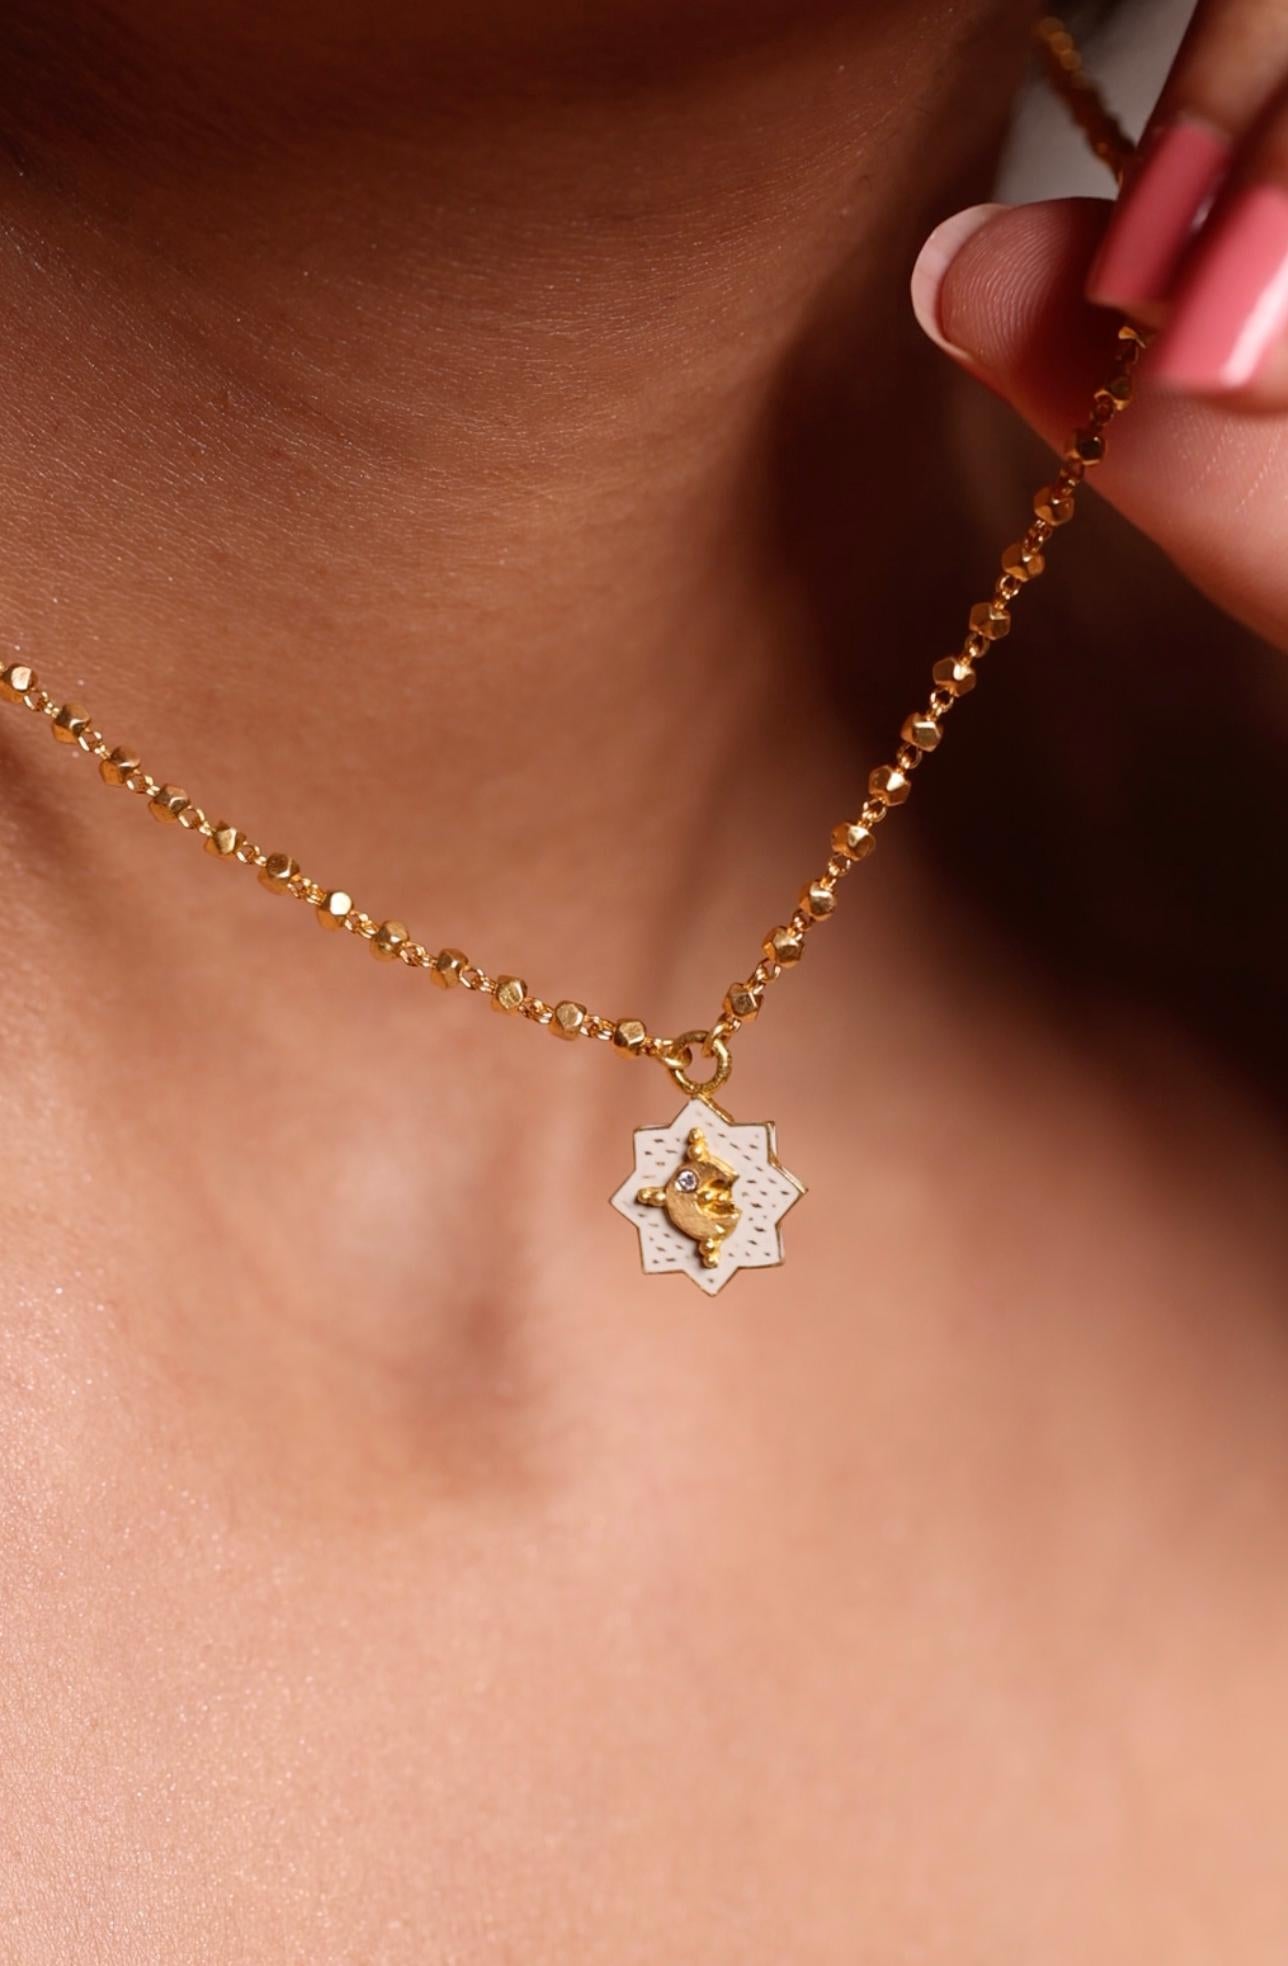 Artisan 22k Gold Handmade White Enamel Star Moon Reversible Pendant Necklace by Agaro For Sale